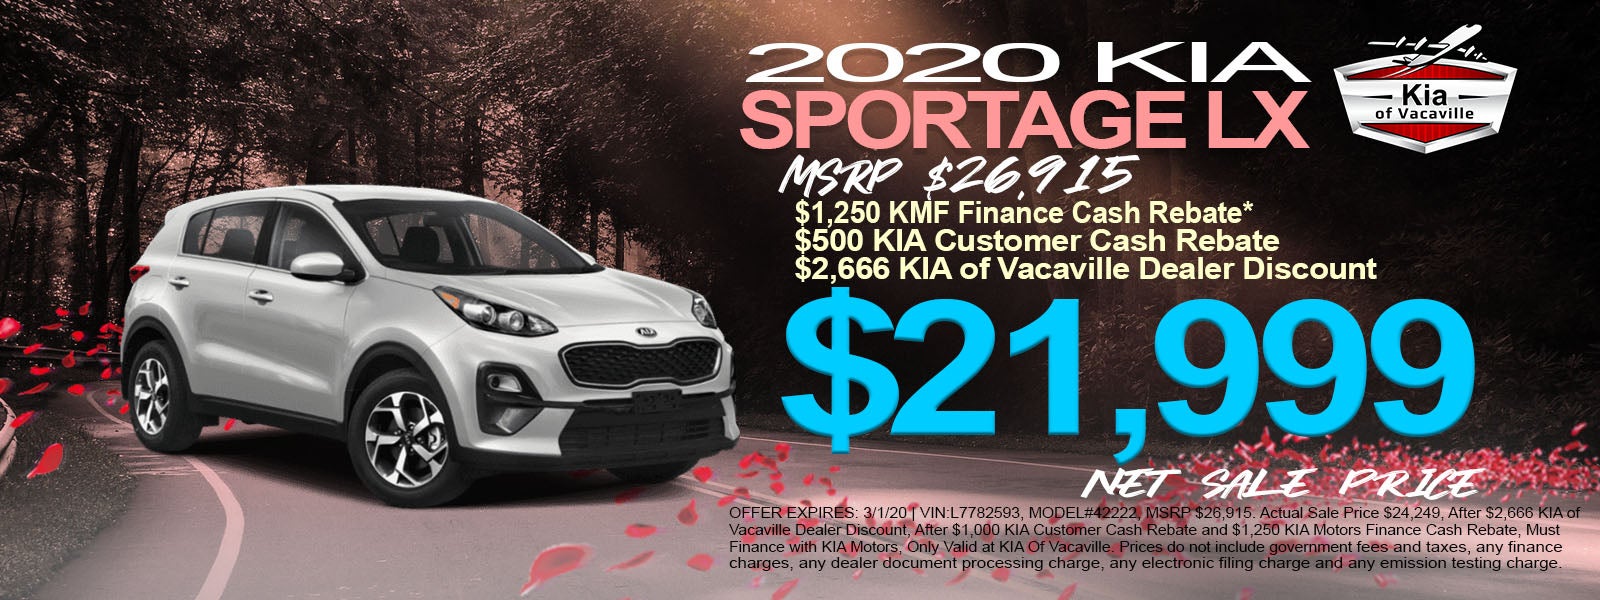 2020 Kia Sportage Lx Price